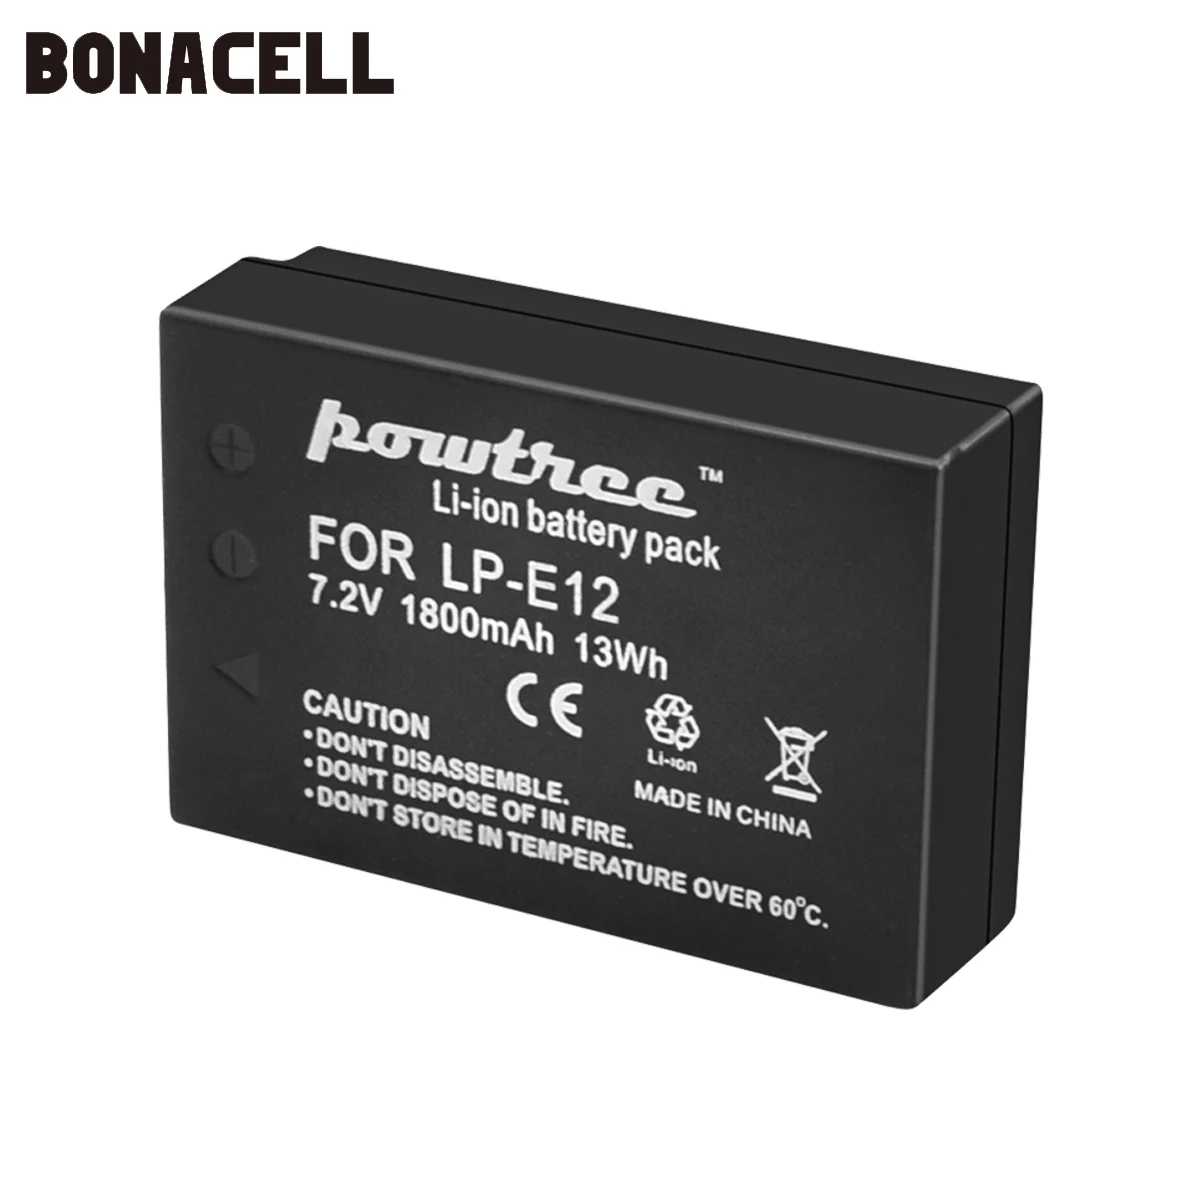 Bonacell 1800 мАч LP-E12 LPE12 LP E12 Аккумулятор для камеры Canon EOS M10 Kiss X7 Rebel SL1 EOS 100D аккумулятор DSLR L50